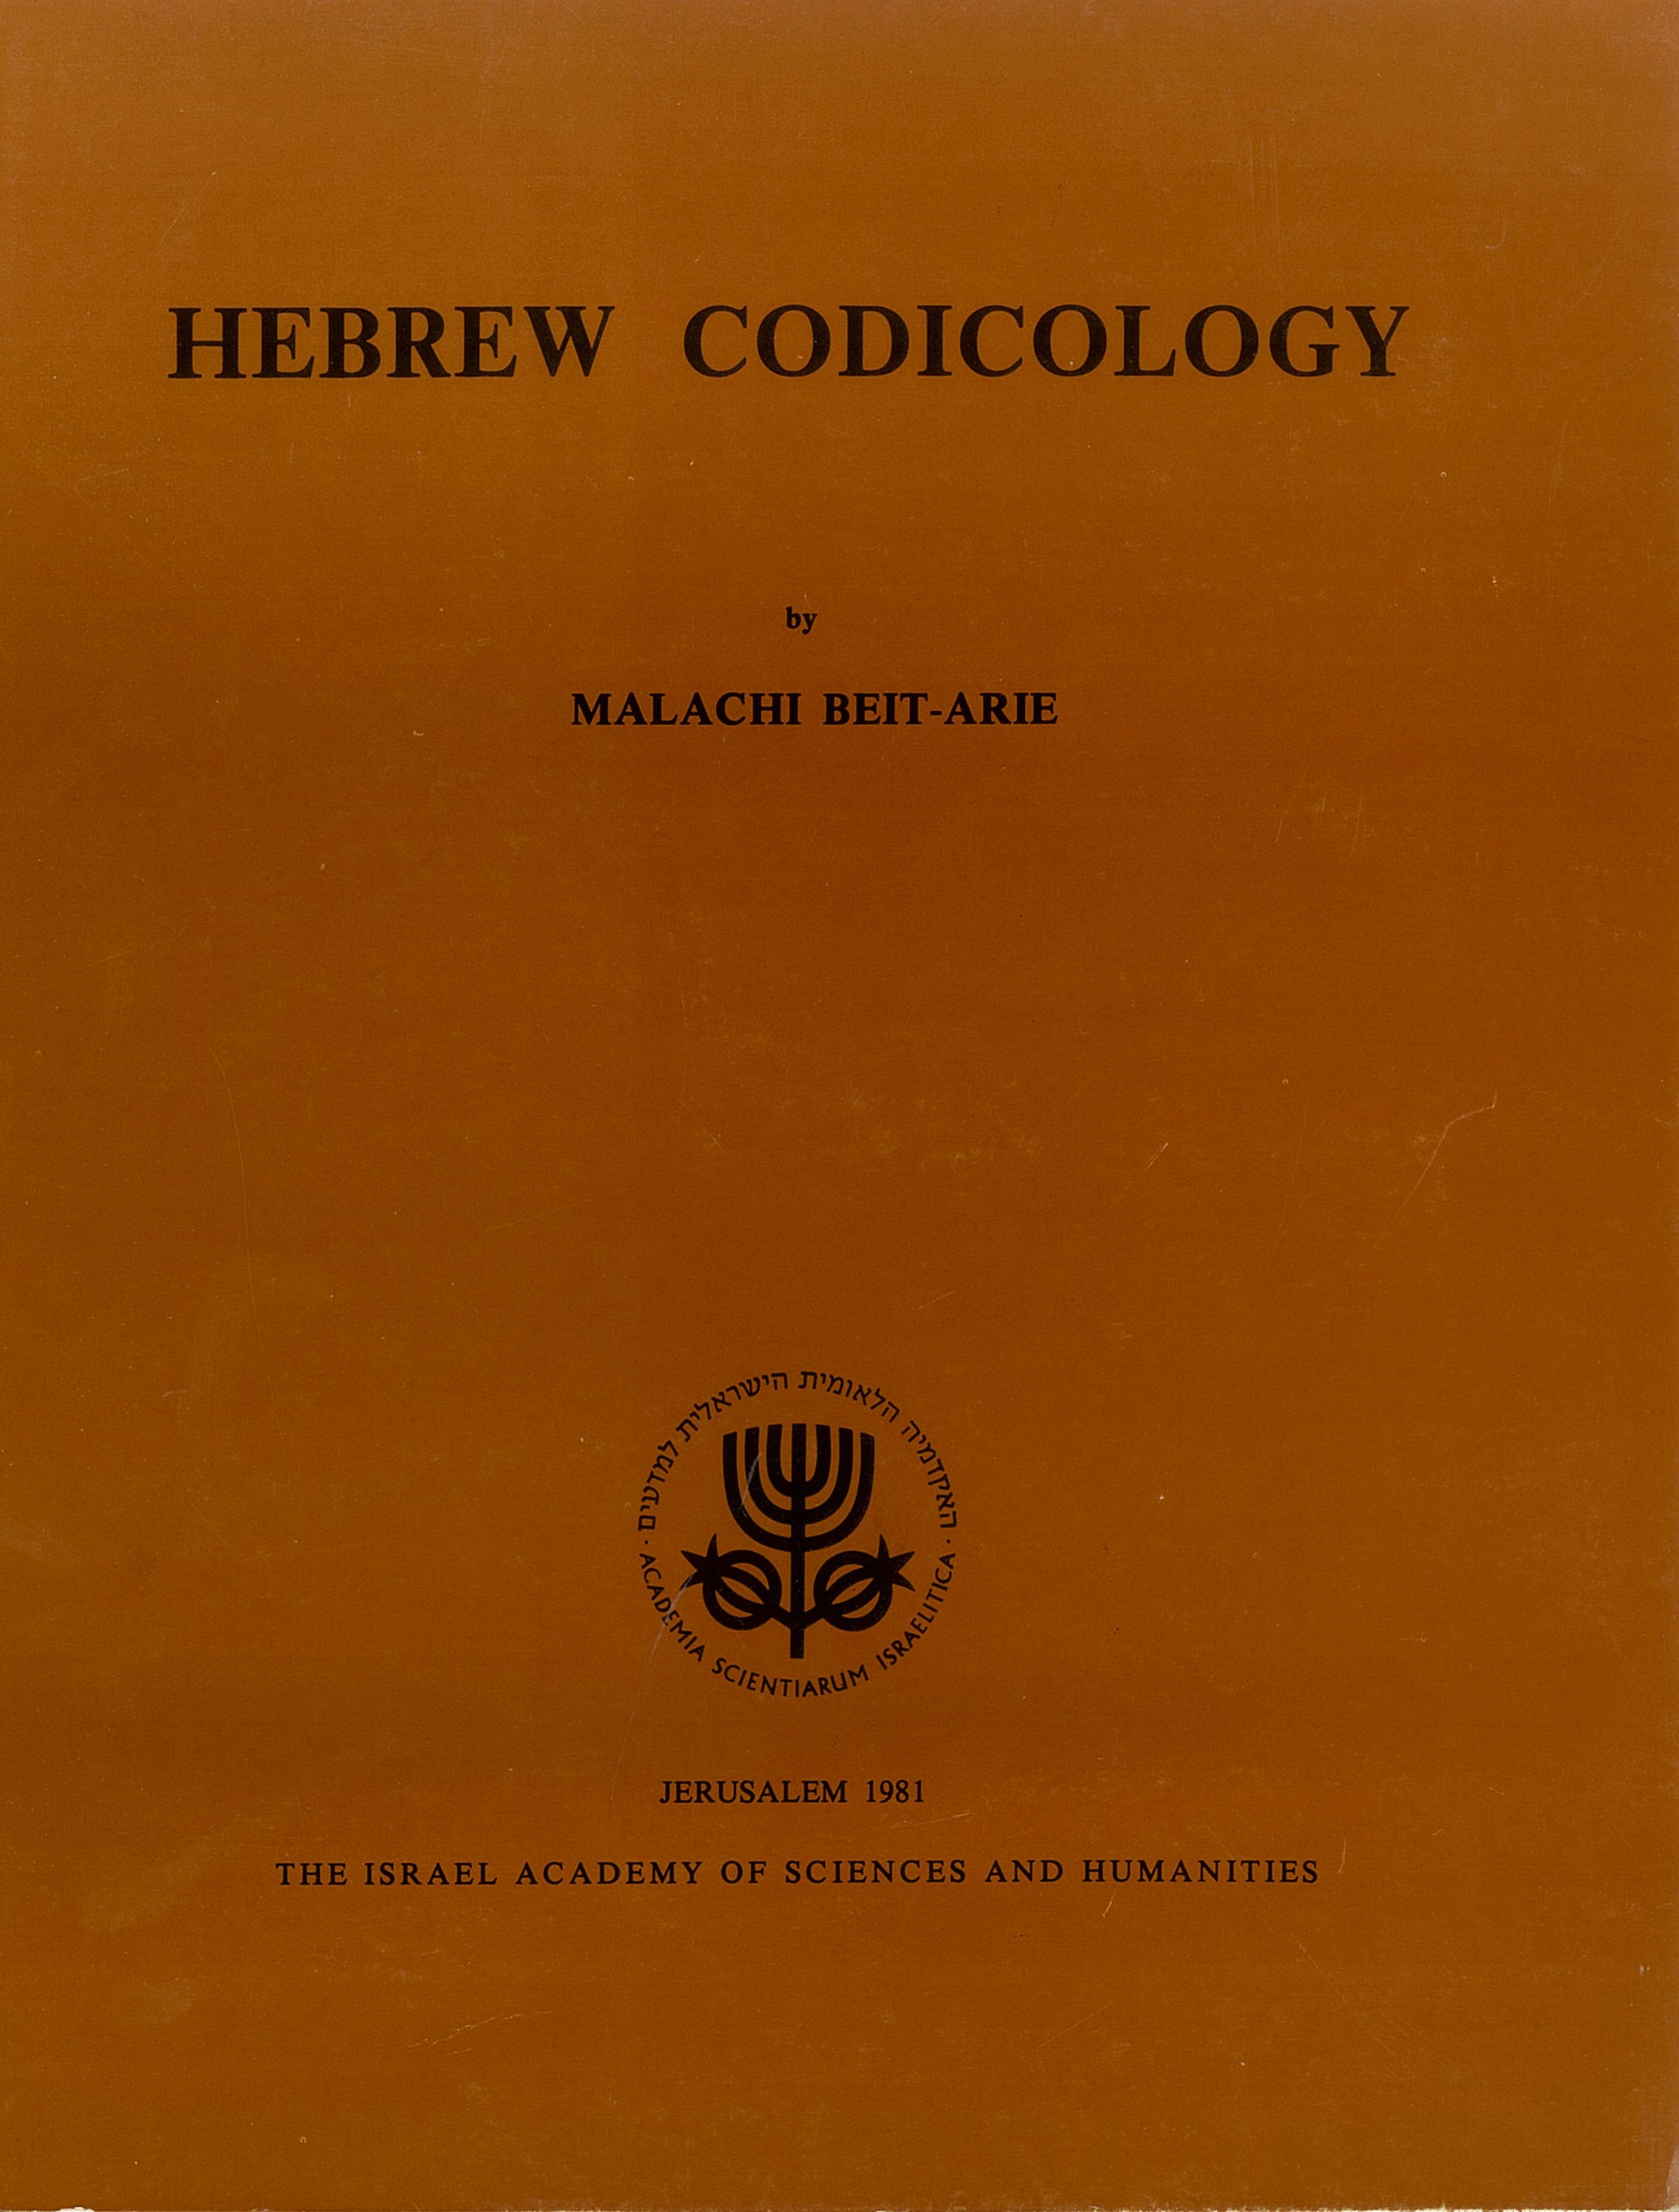 Hebrew Codicology